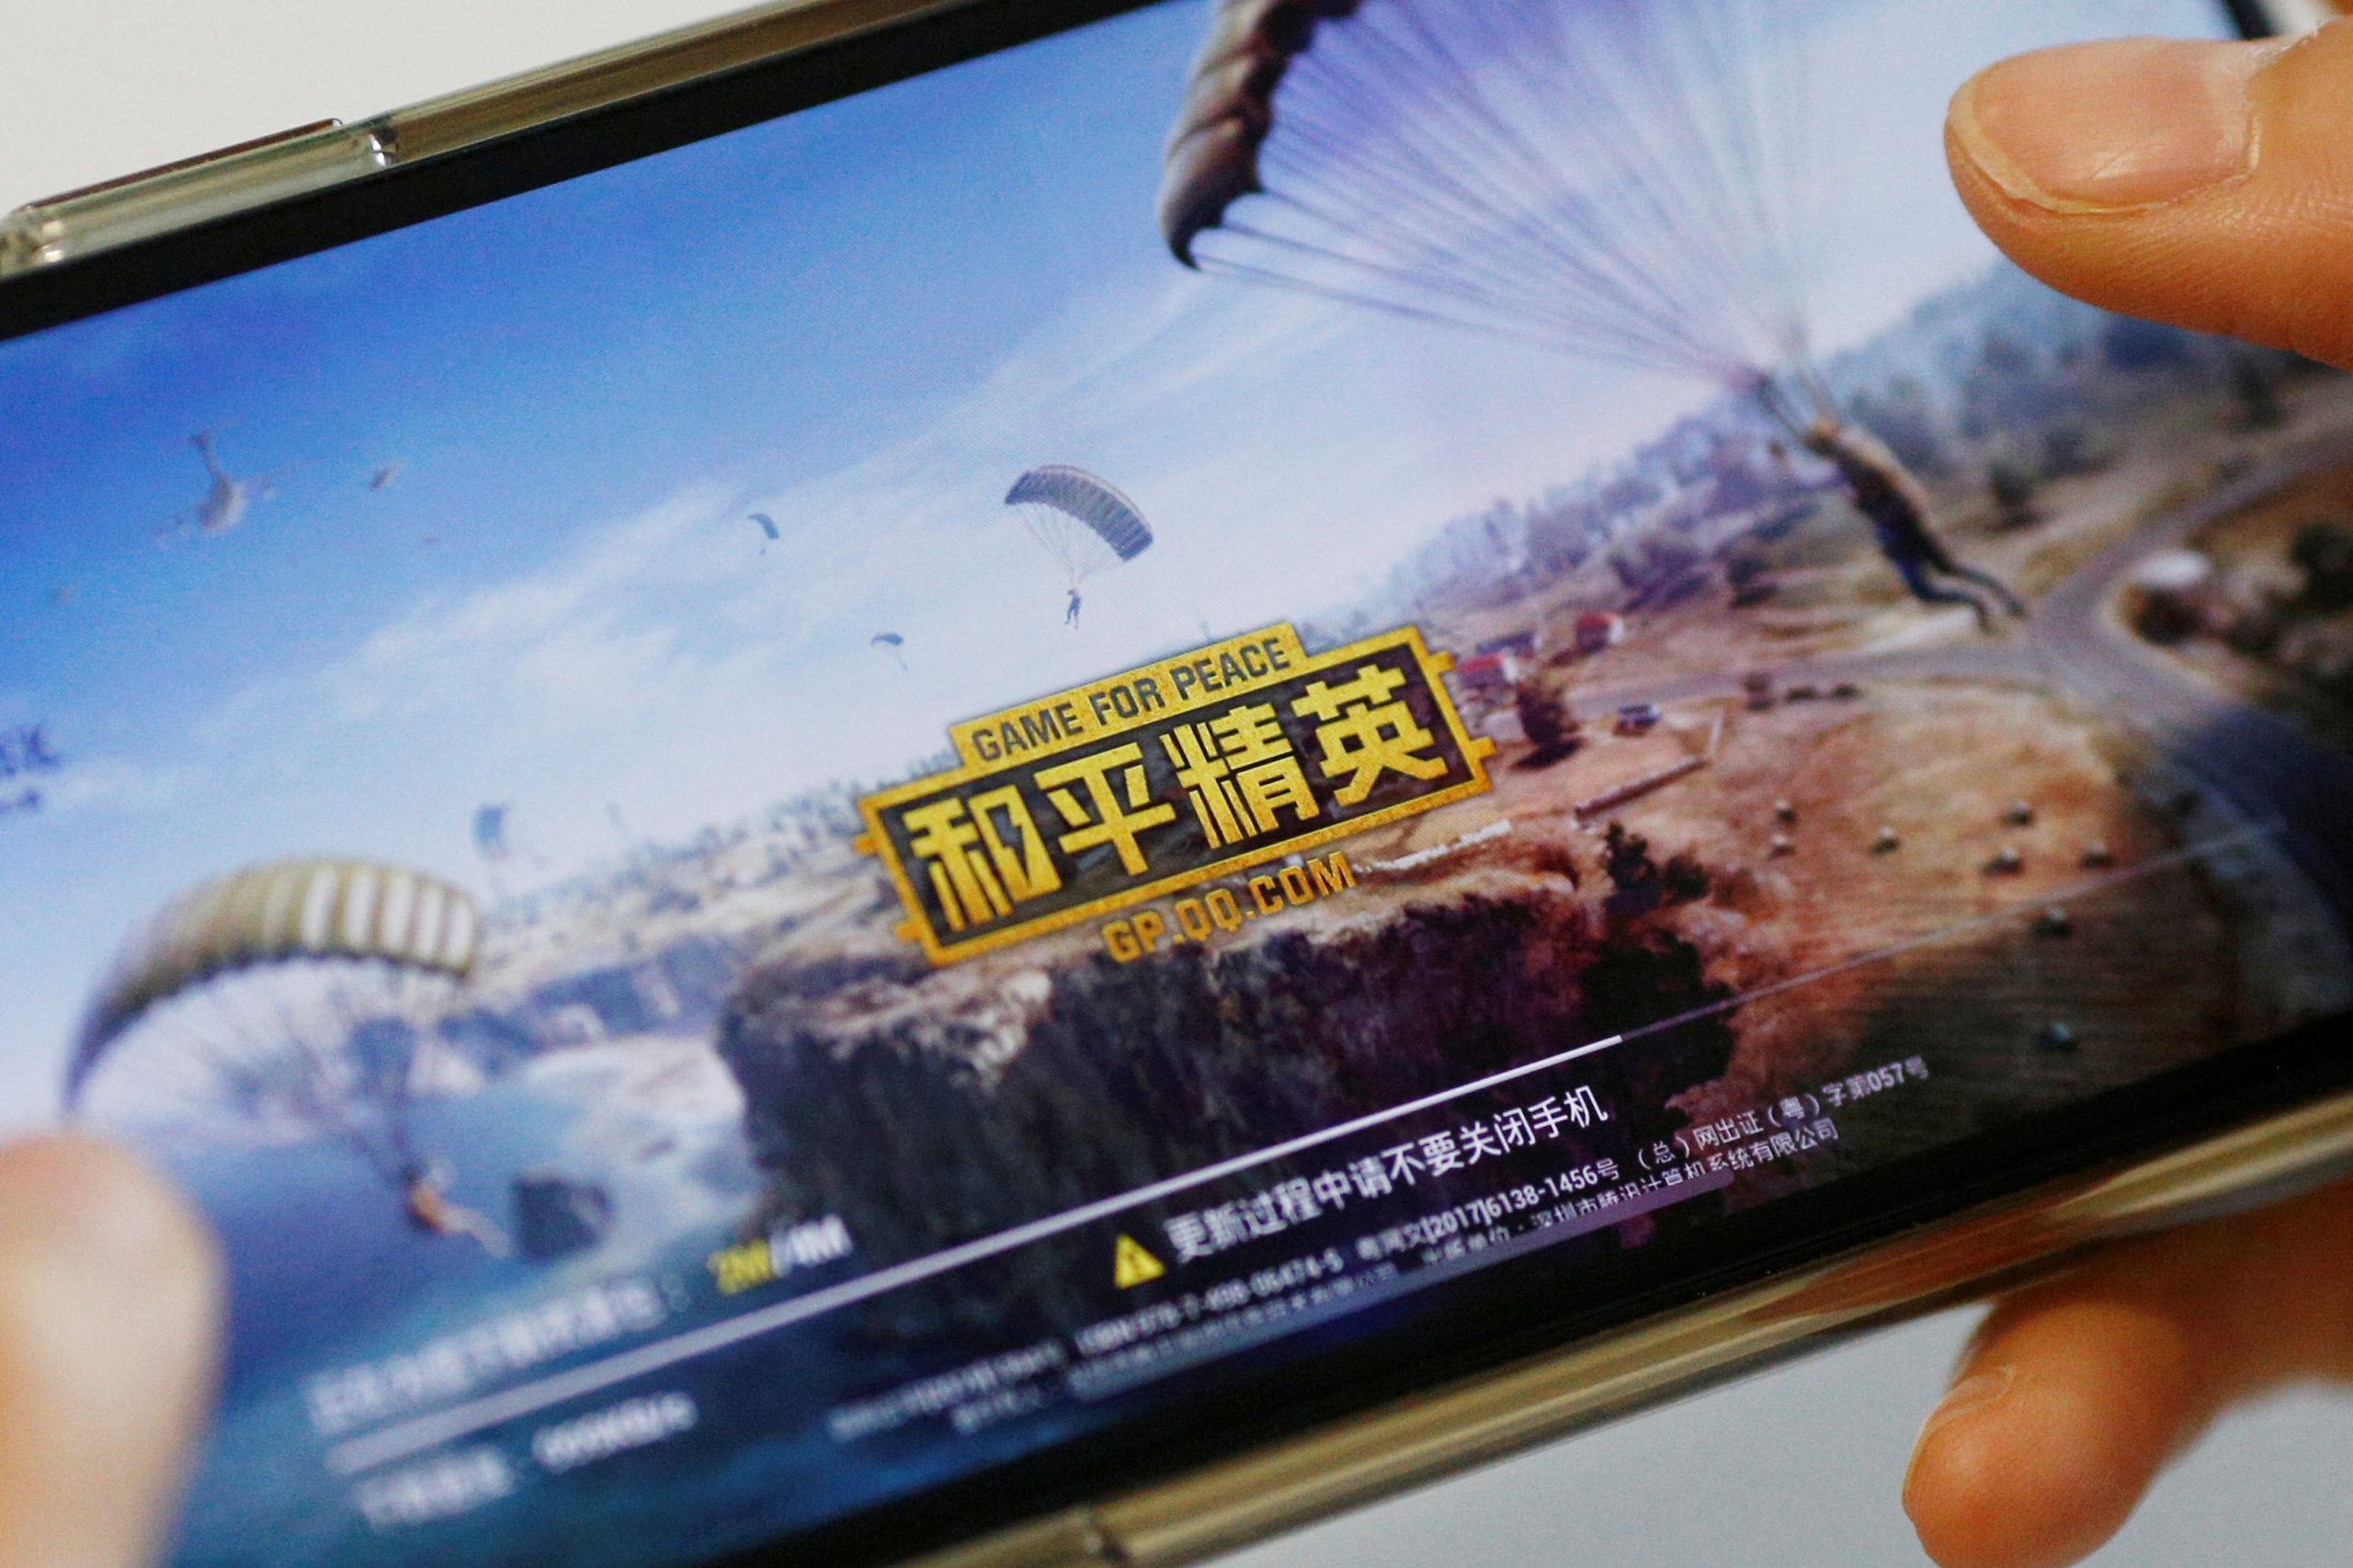 控管网络游戏草案下线  中国2大游戏公司股价涨逾6%